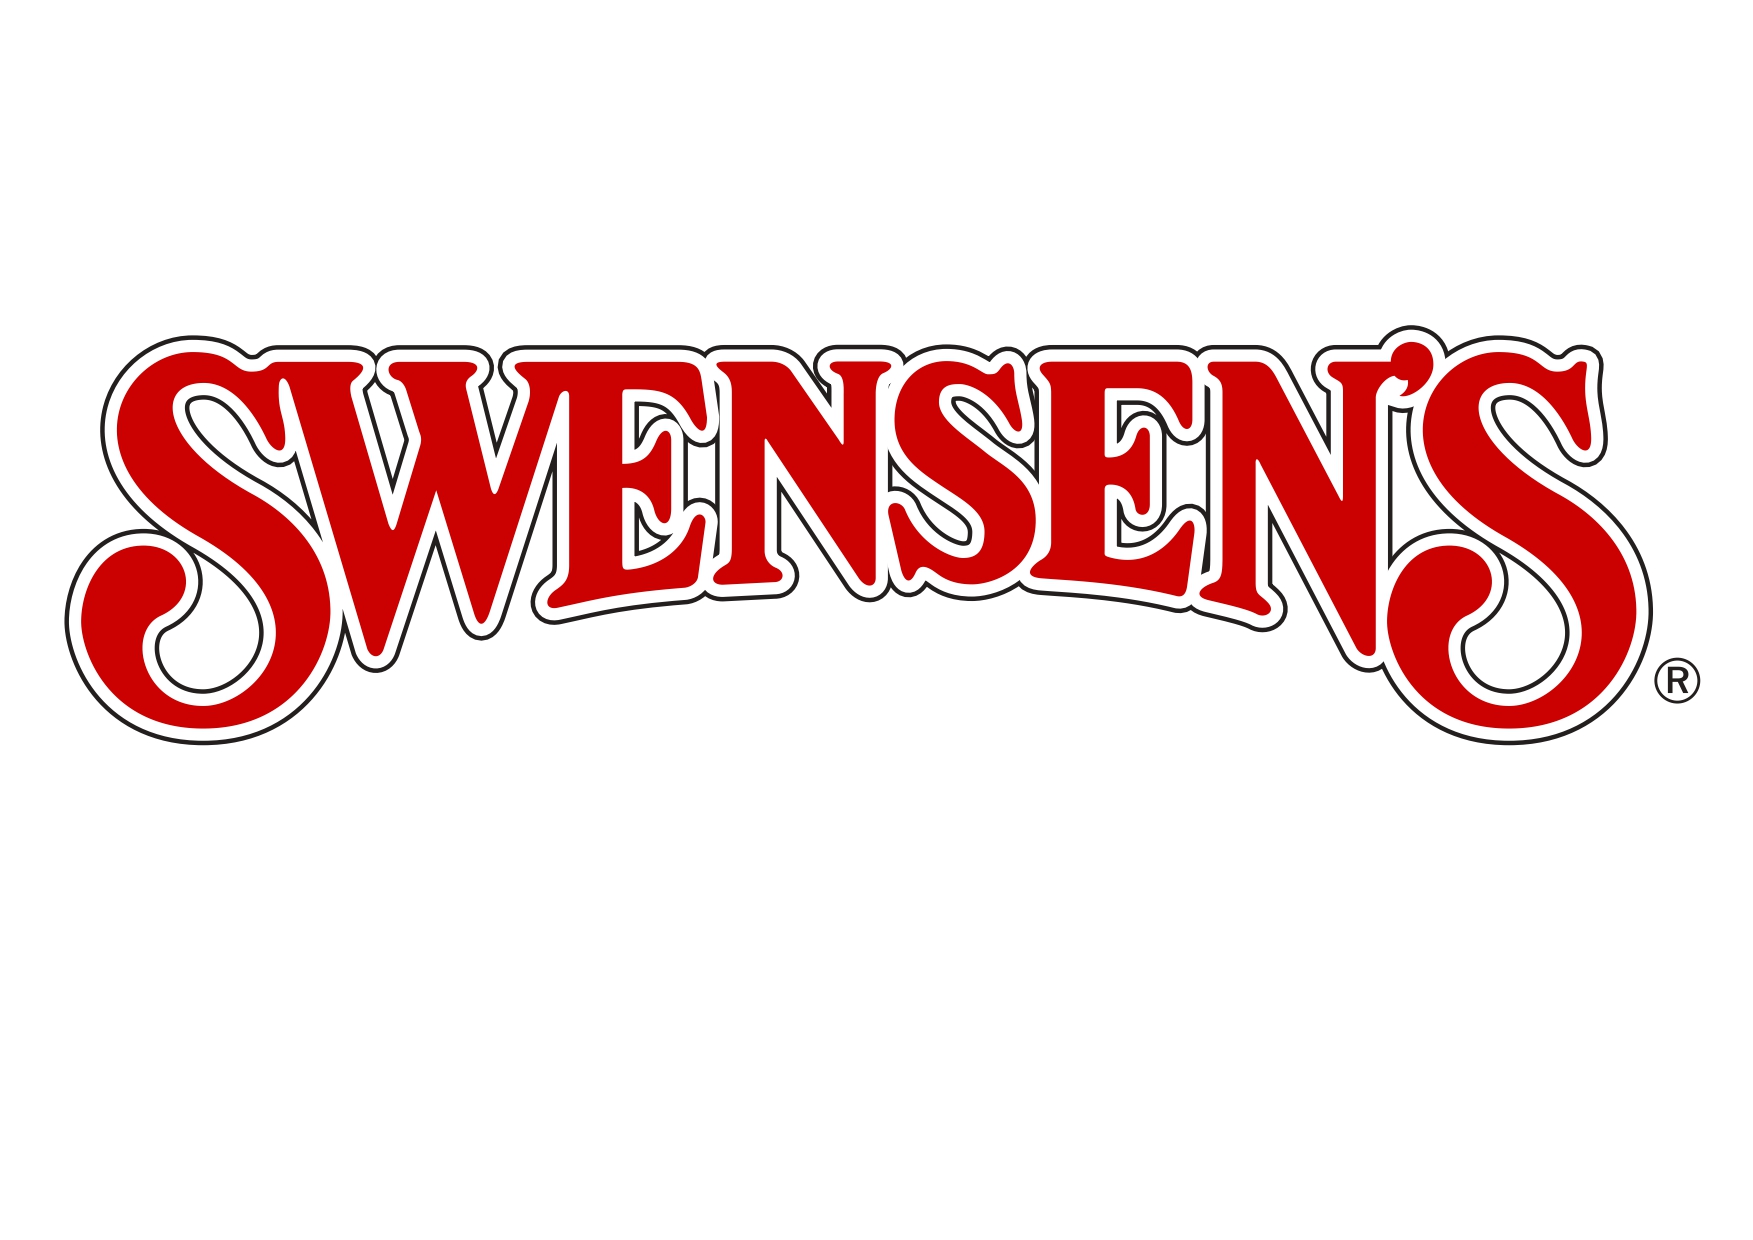 Swensen’s (Home Team Day)